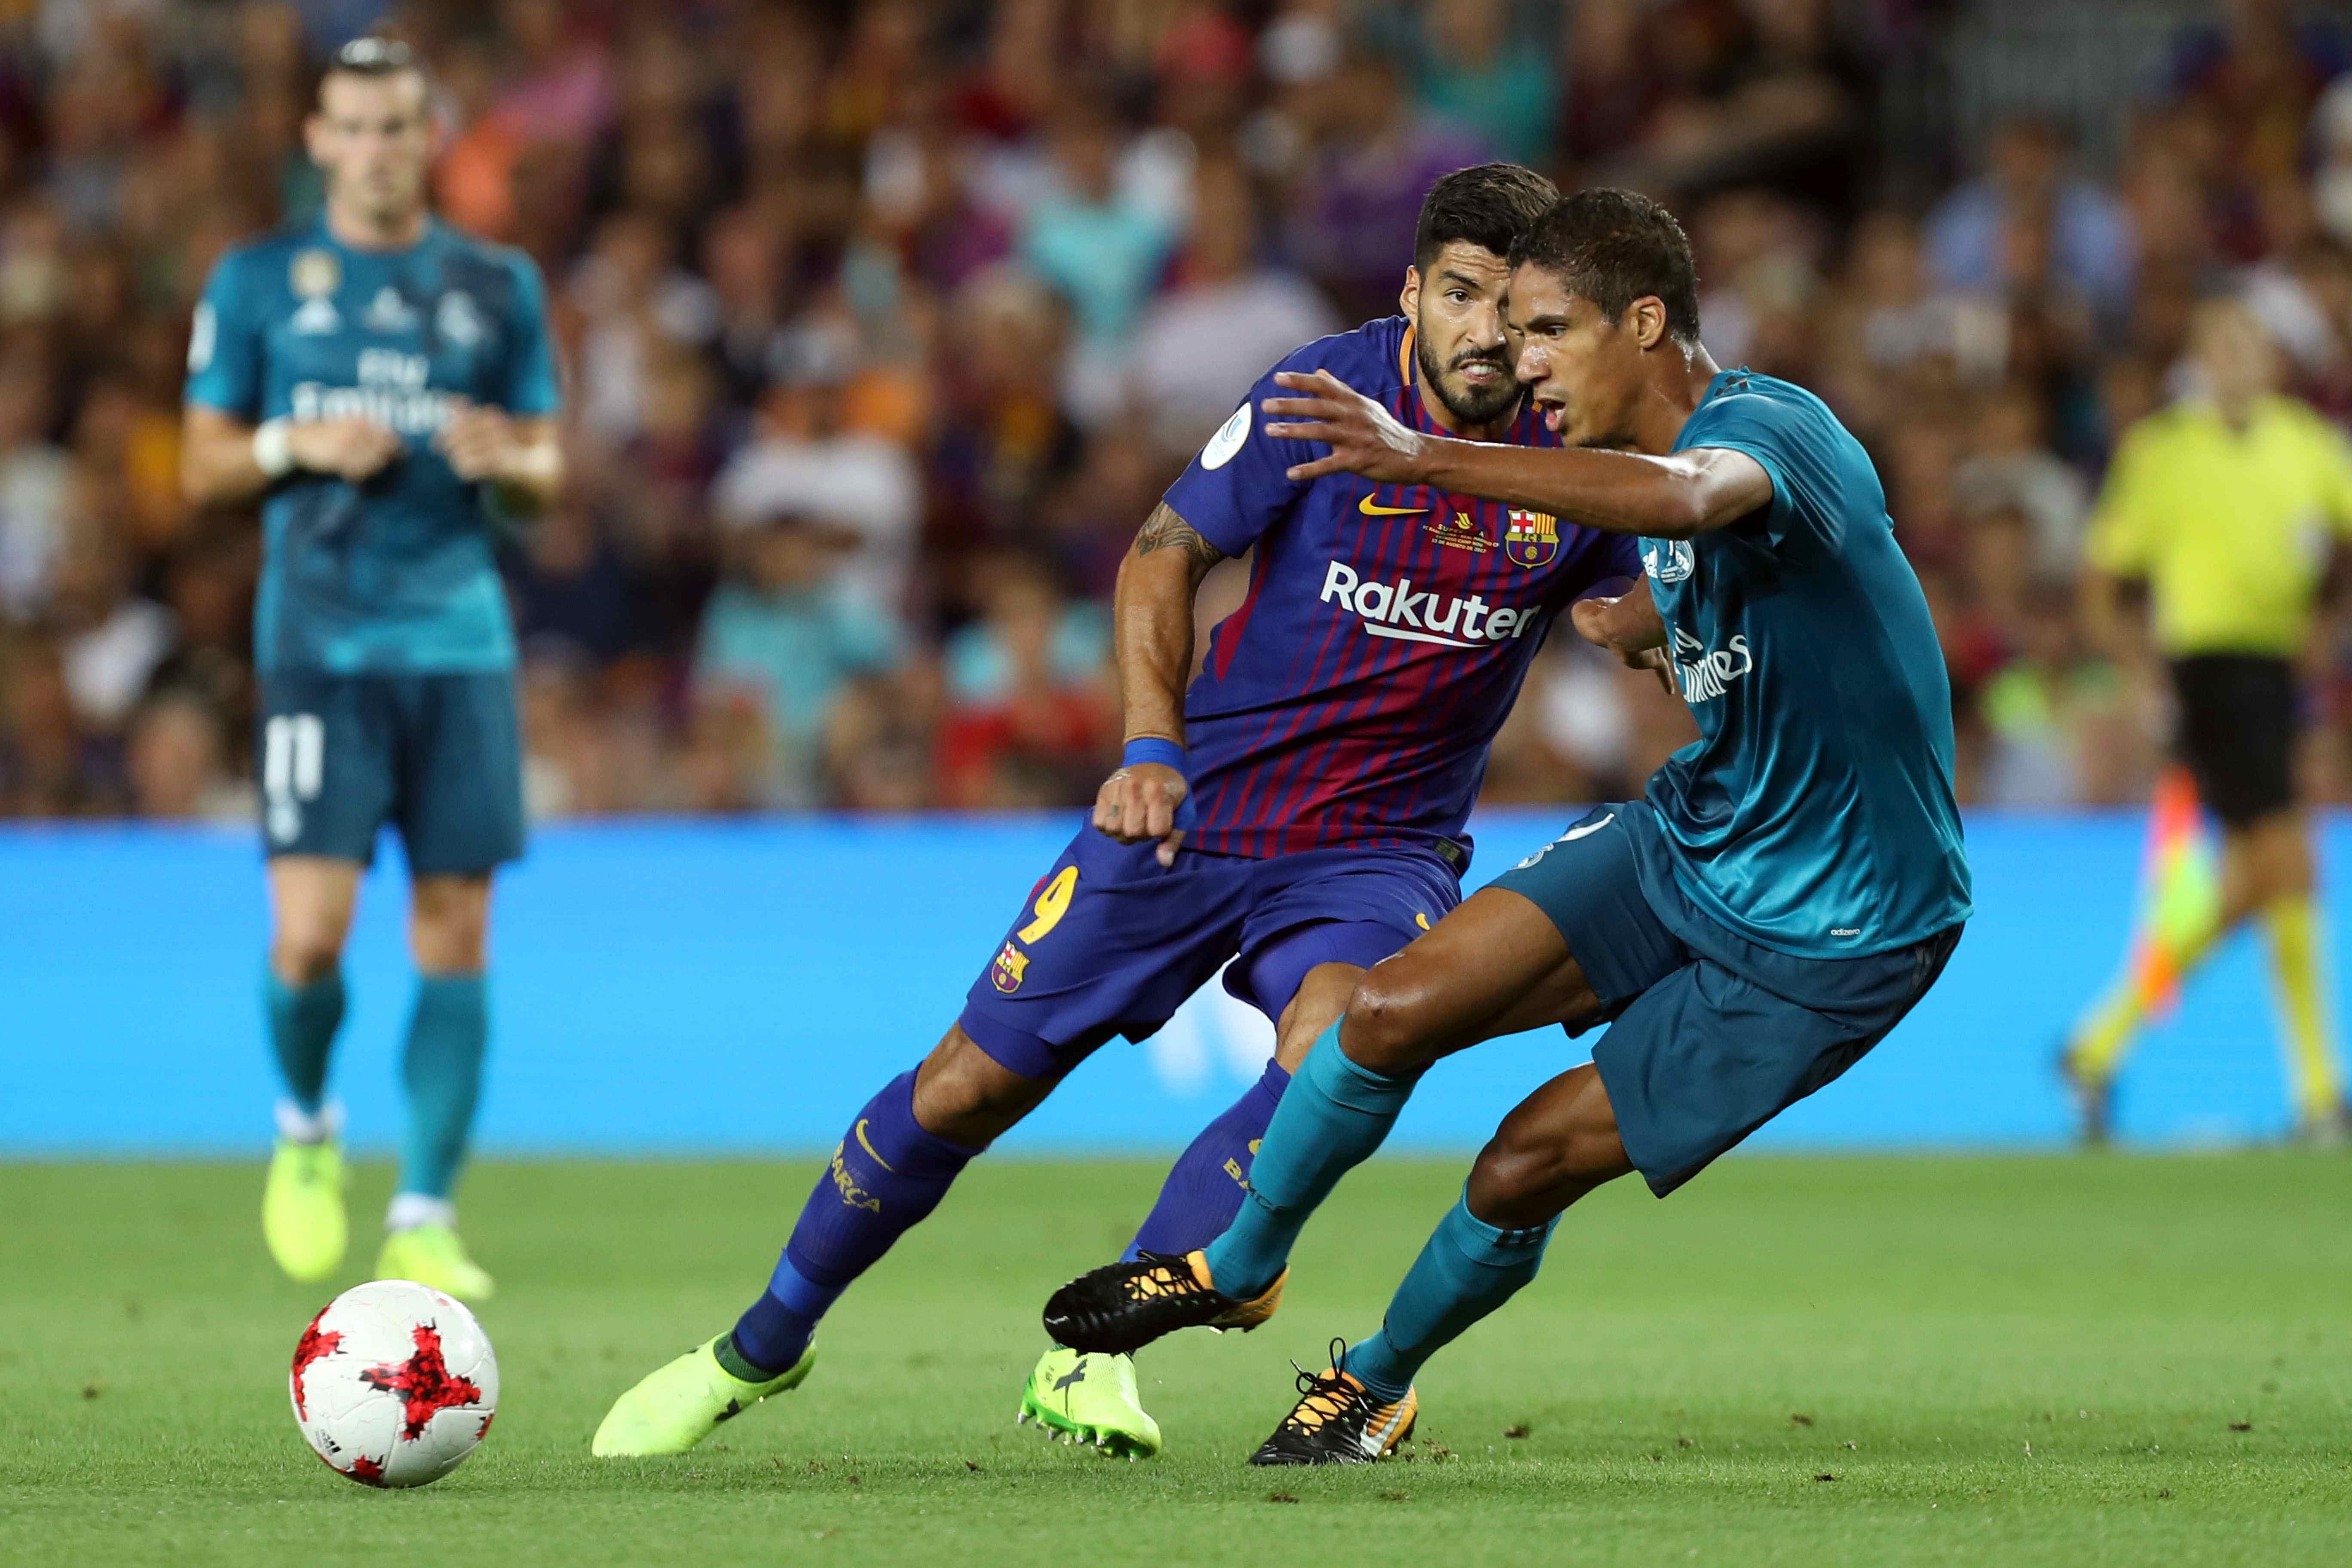 Dades: El Barça necessita tres gols per guanyar la Supercopa